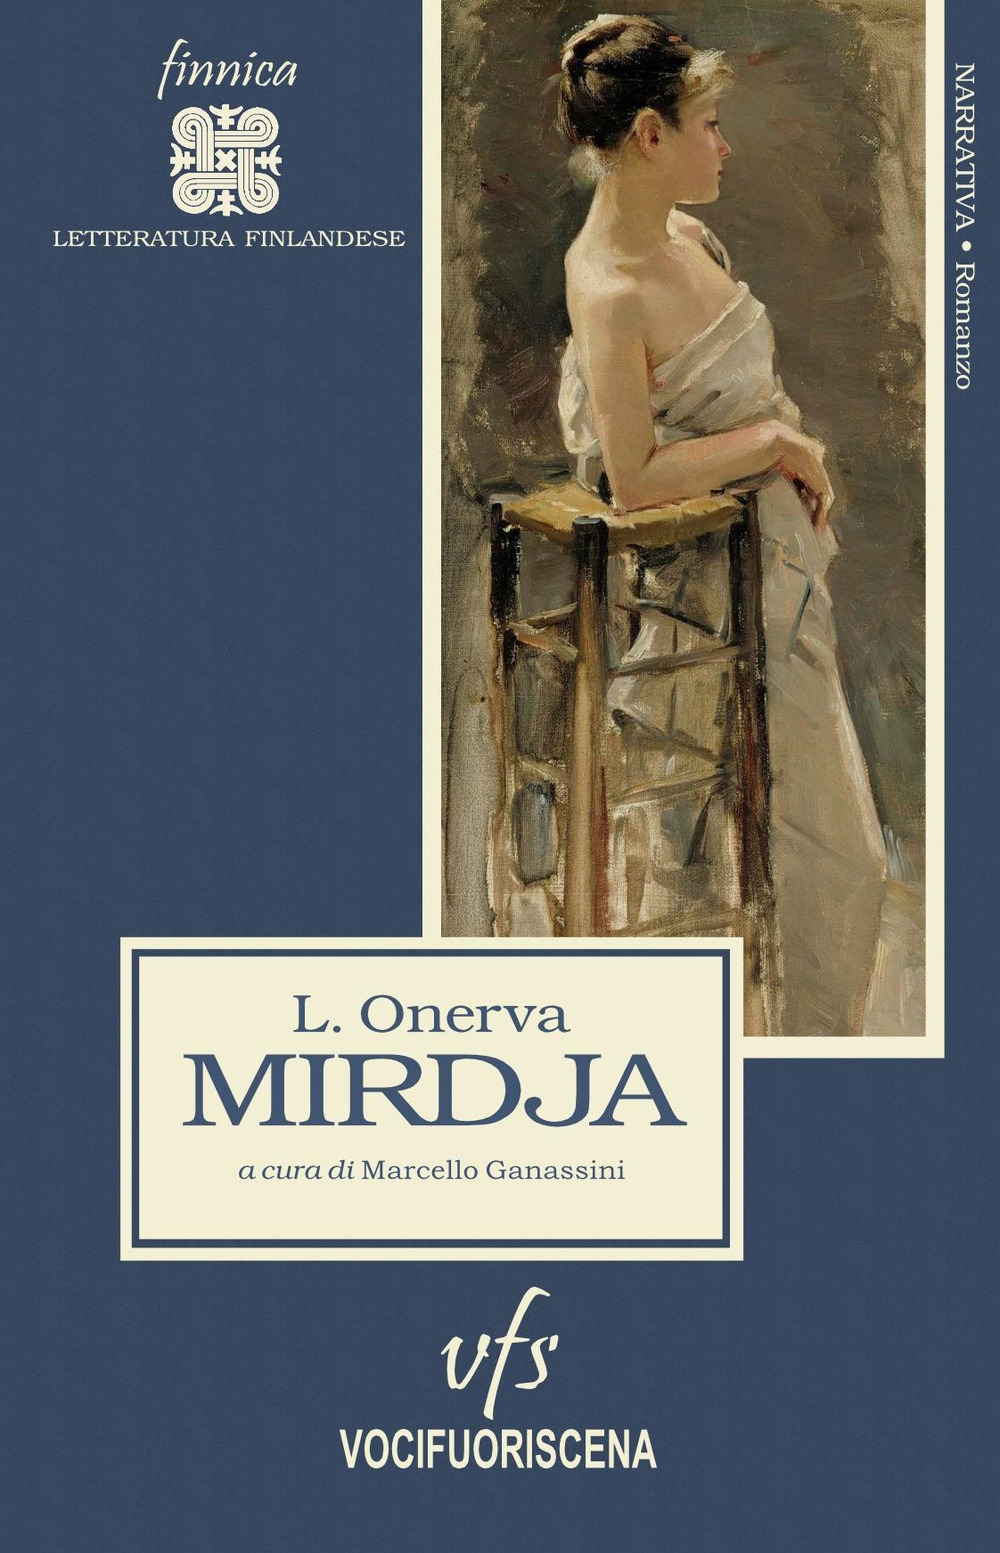 Libri Onerva L. - Mirdja NUOVO SIGILLATO, EDIZIONE DEL 27/05/2022 SUBITO DISPONIBILE